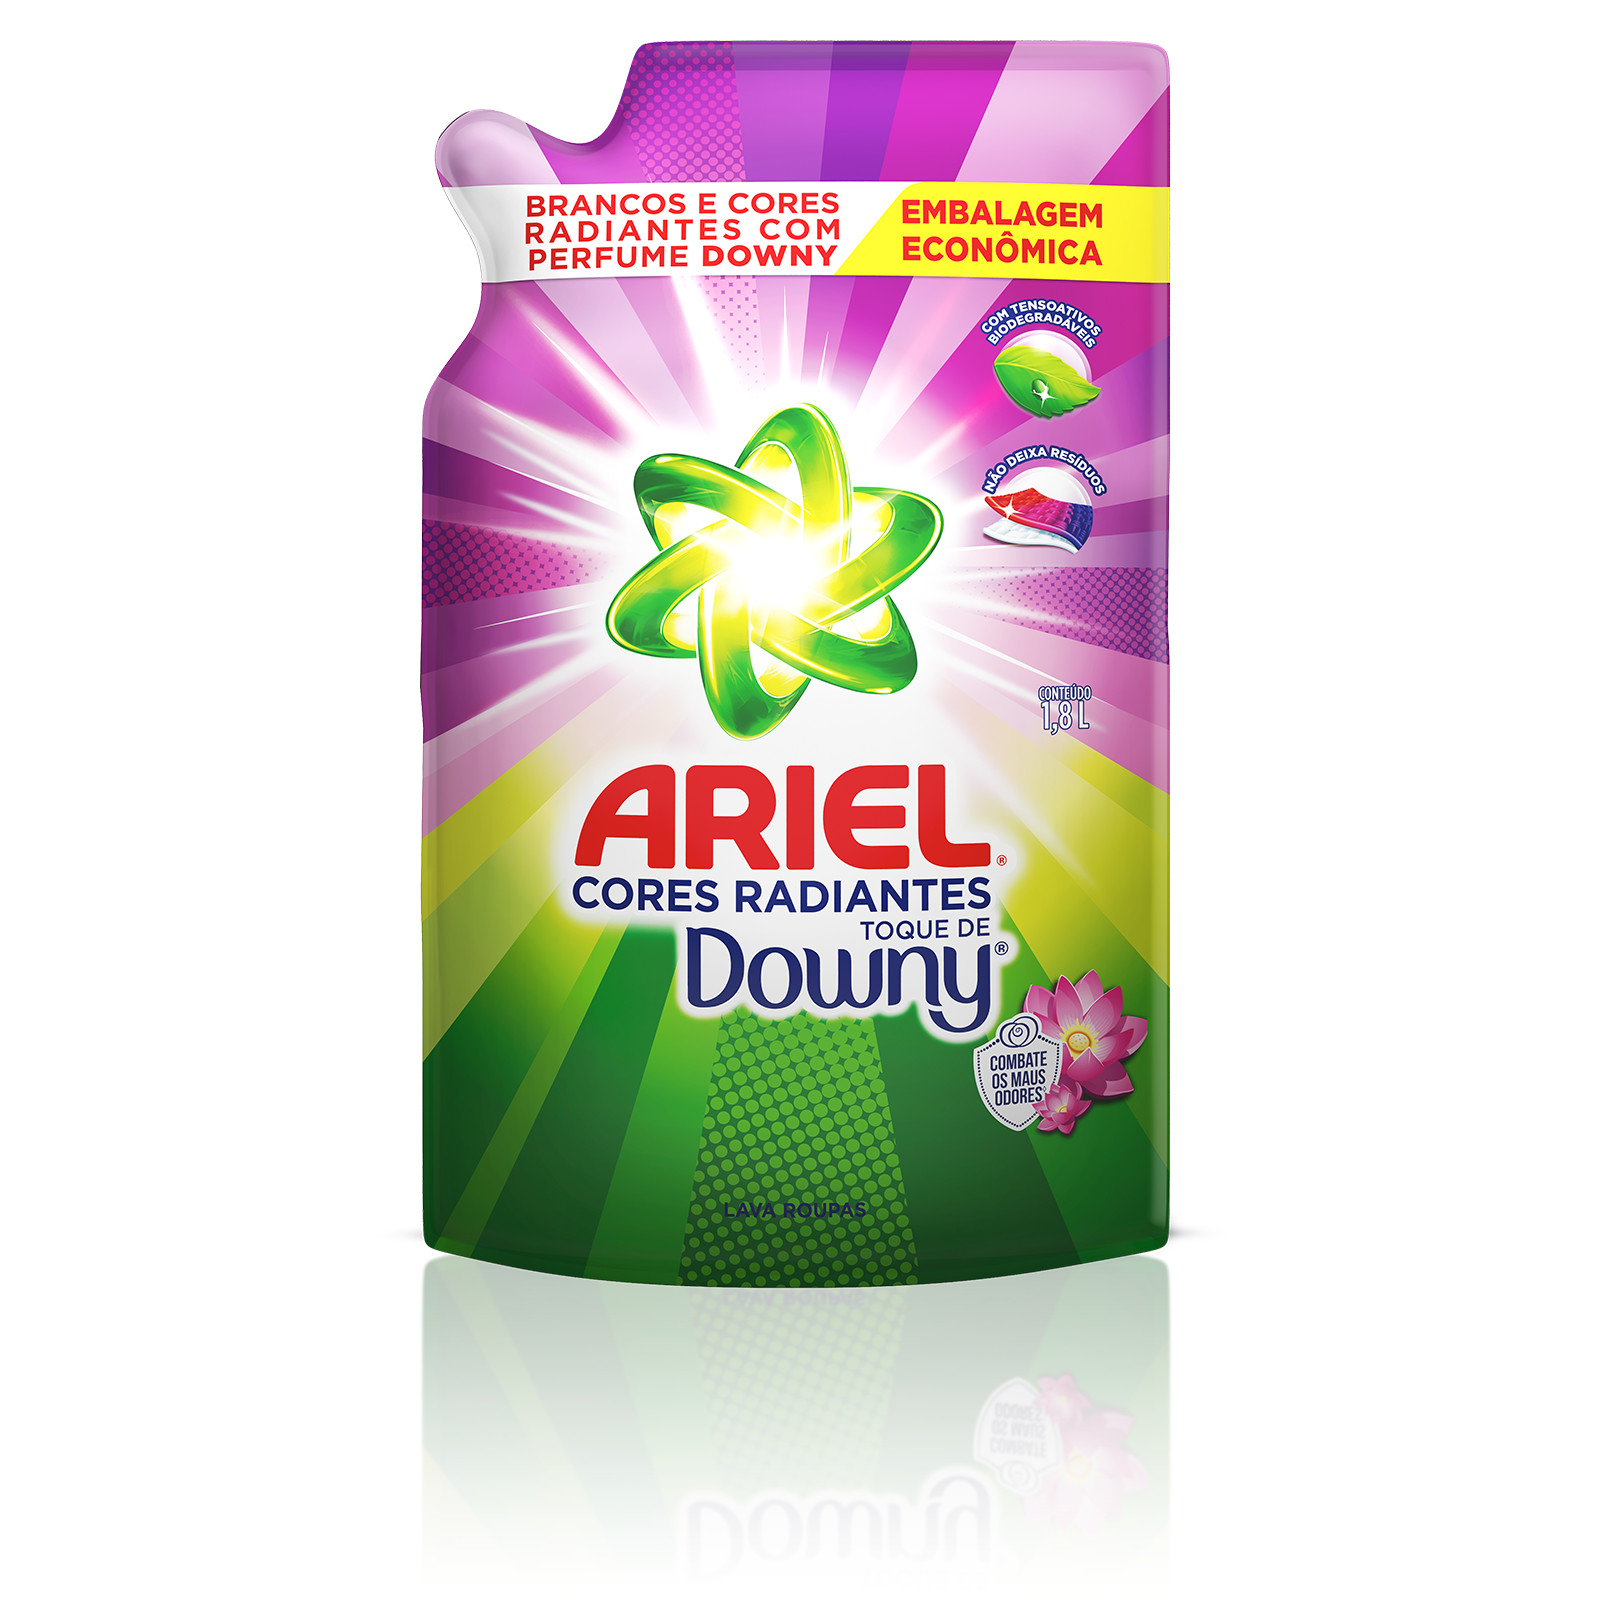 Ariel Cores Radiantes Toque de Downy